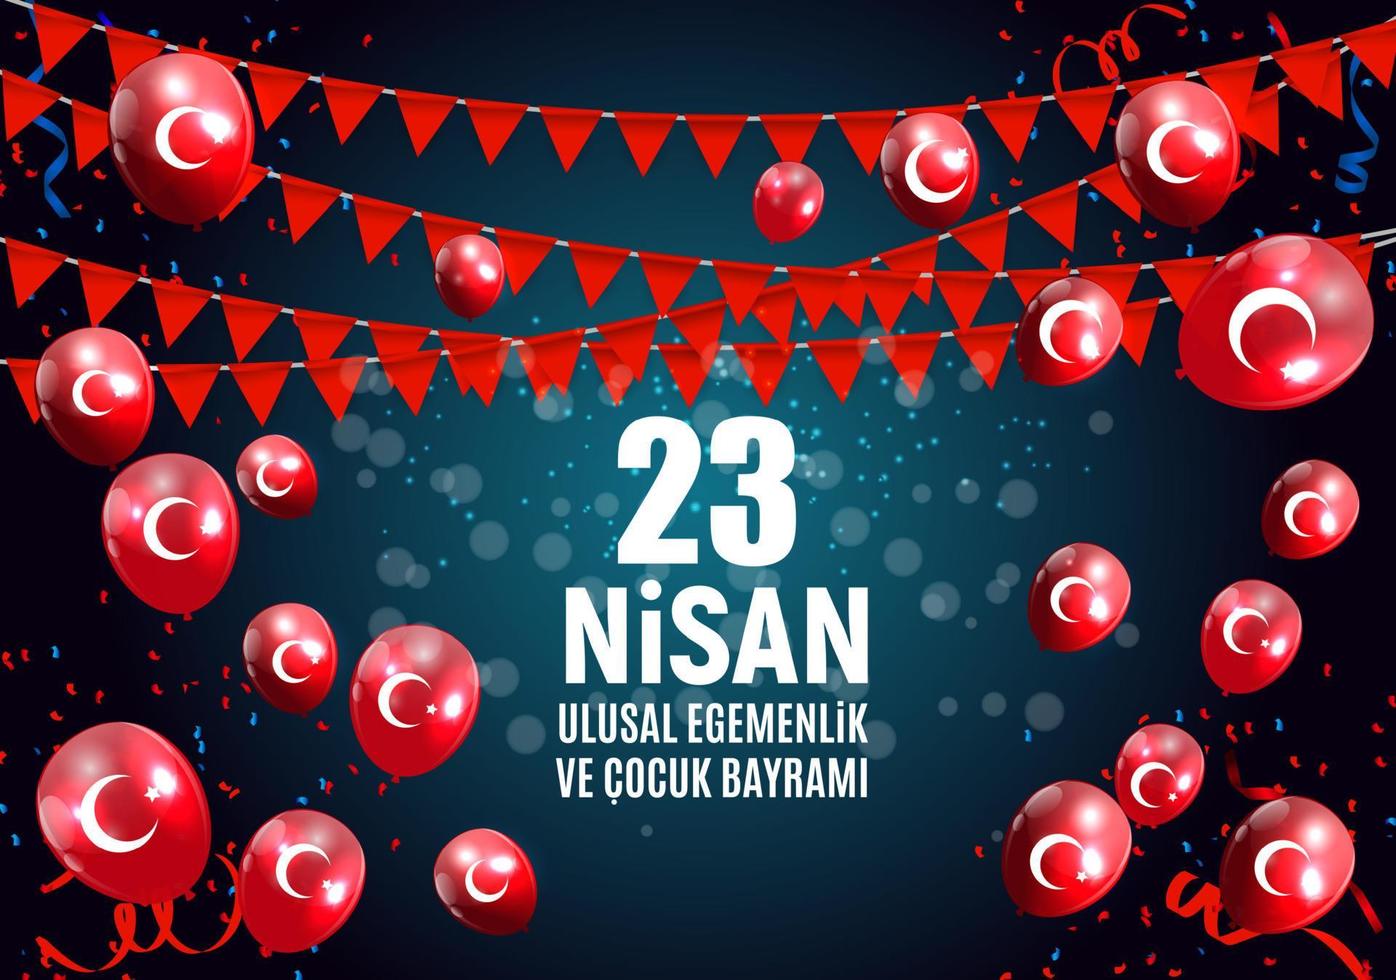 23 aprile Giornata dei bambini in turco. 23 nisan cumhuriyet bayrami. illustrazione vettoriale